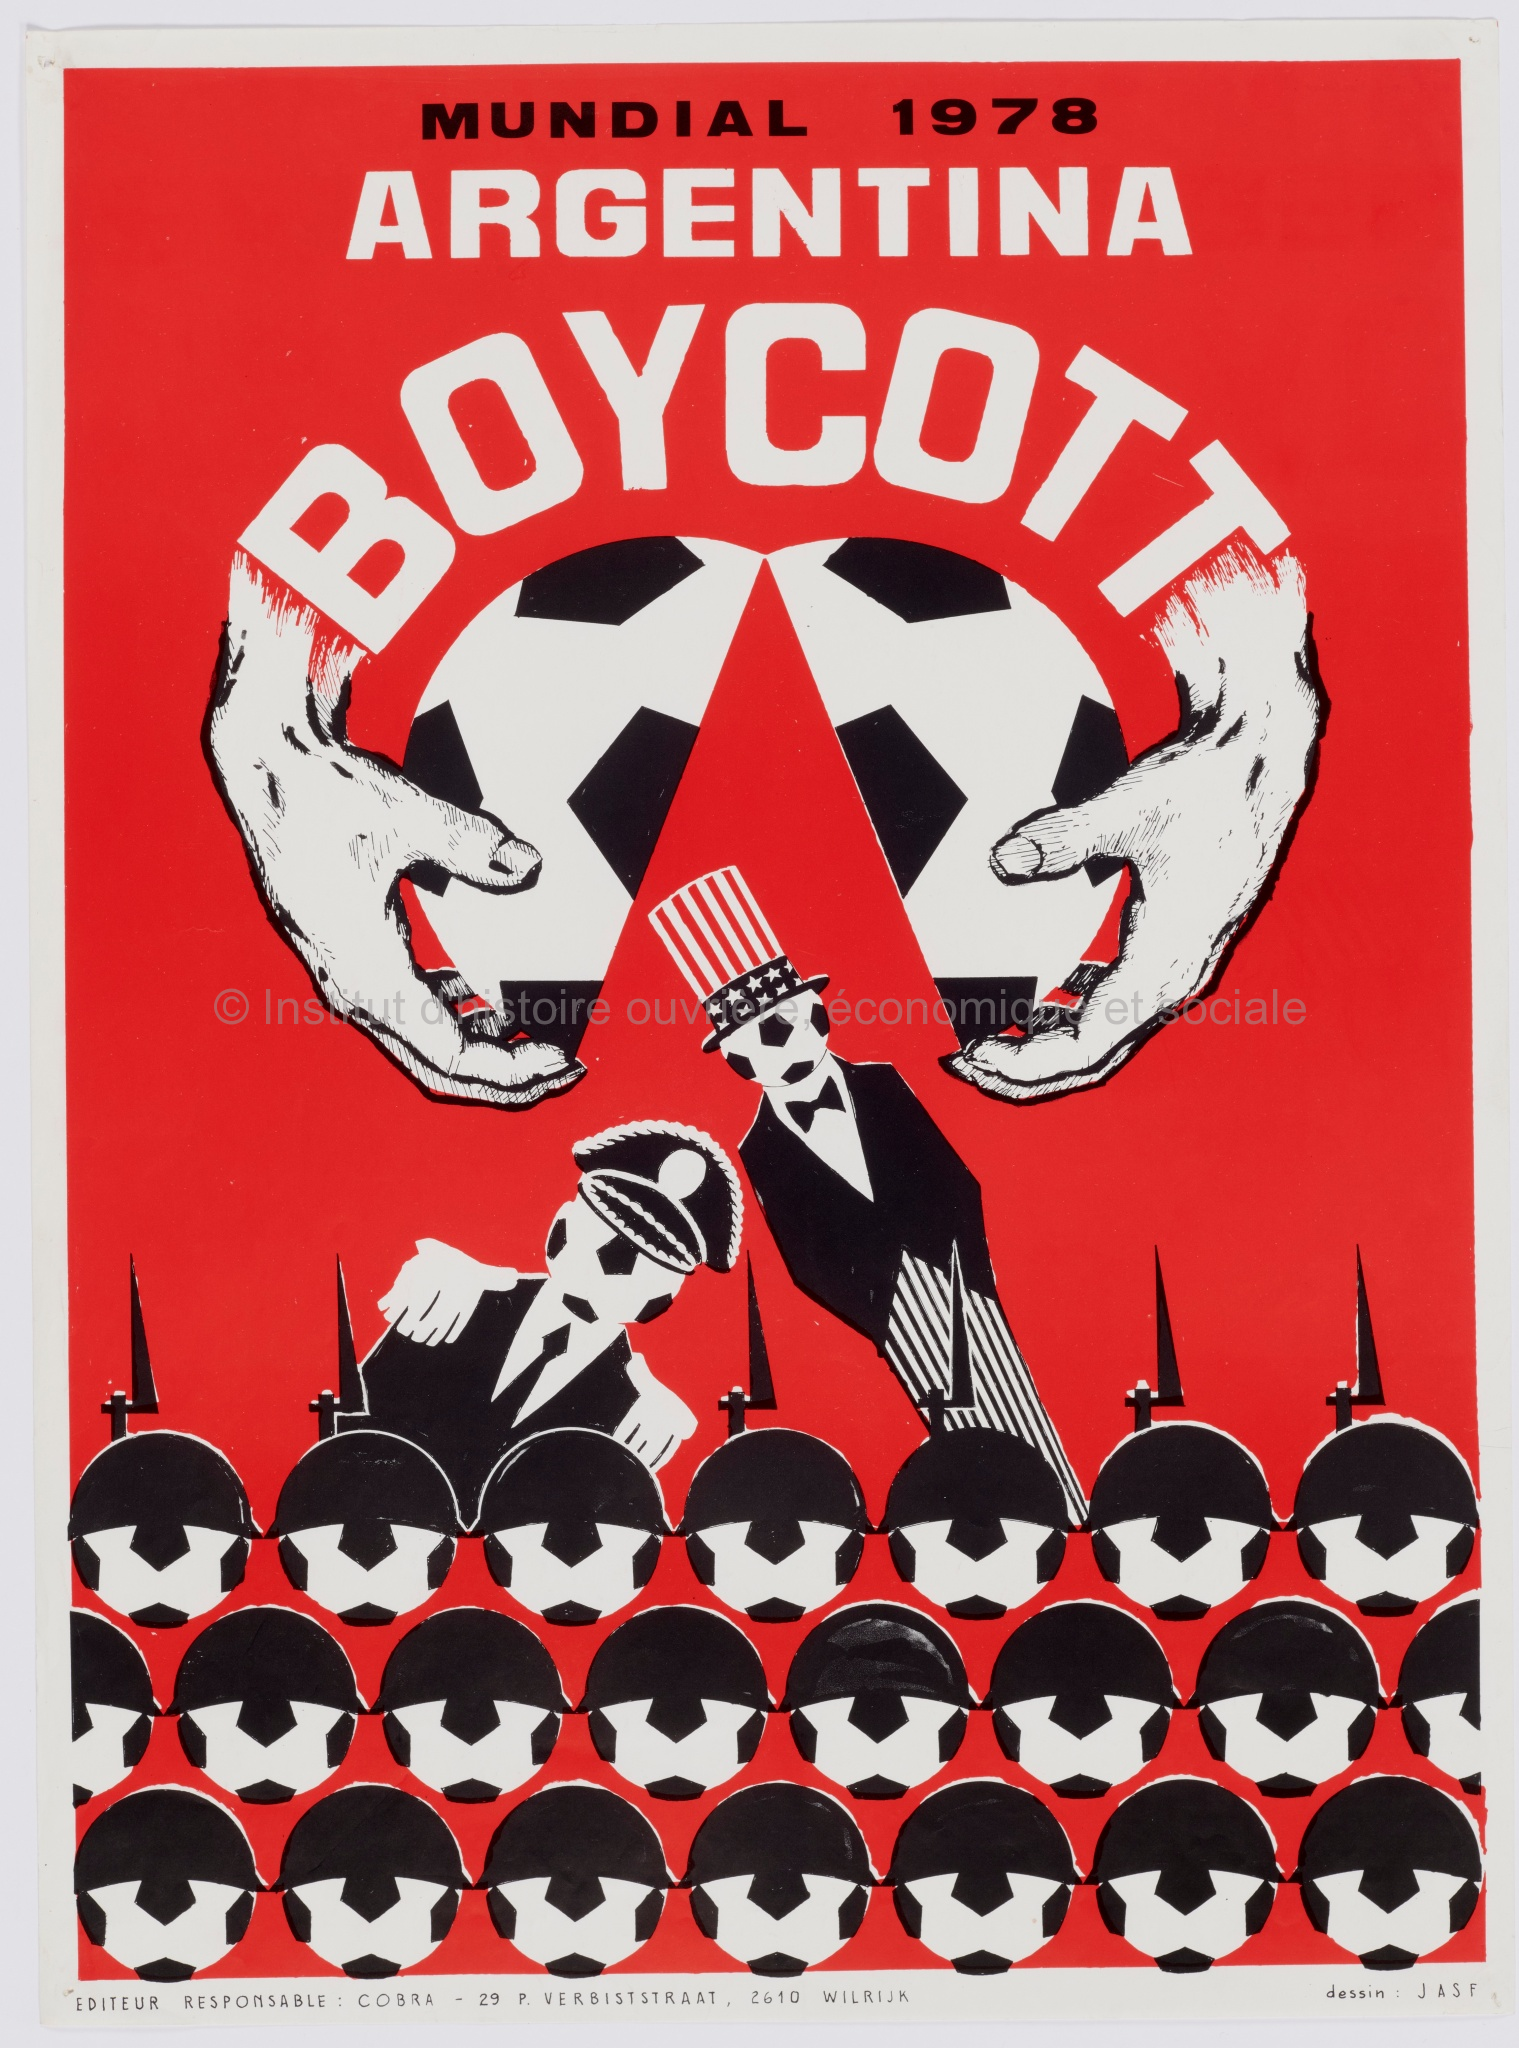 Mundial 1978 Argentina Boycott